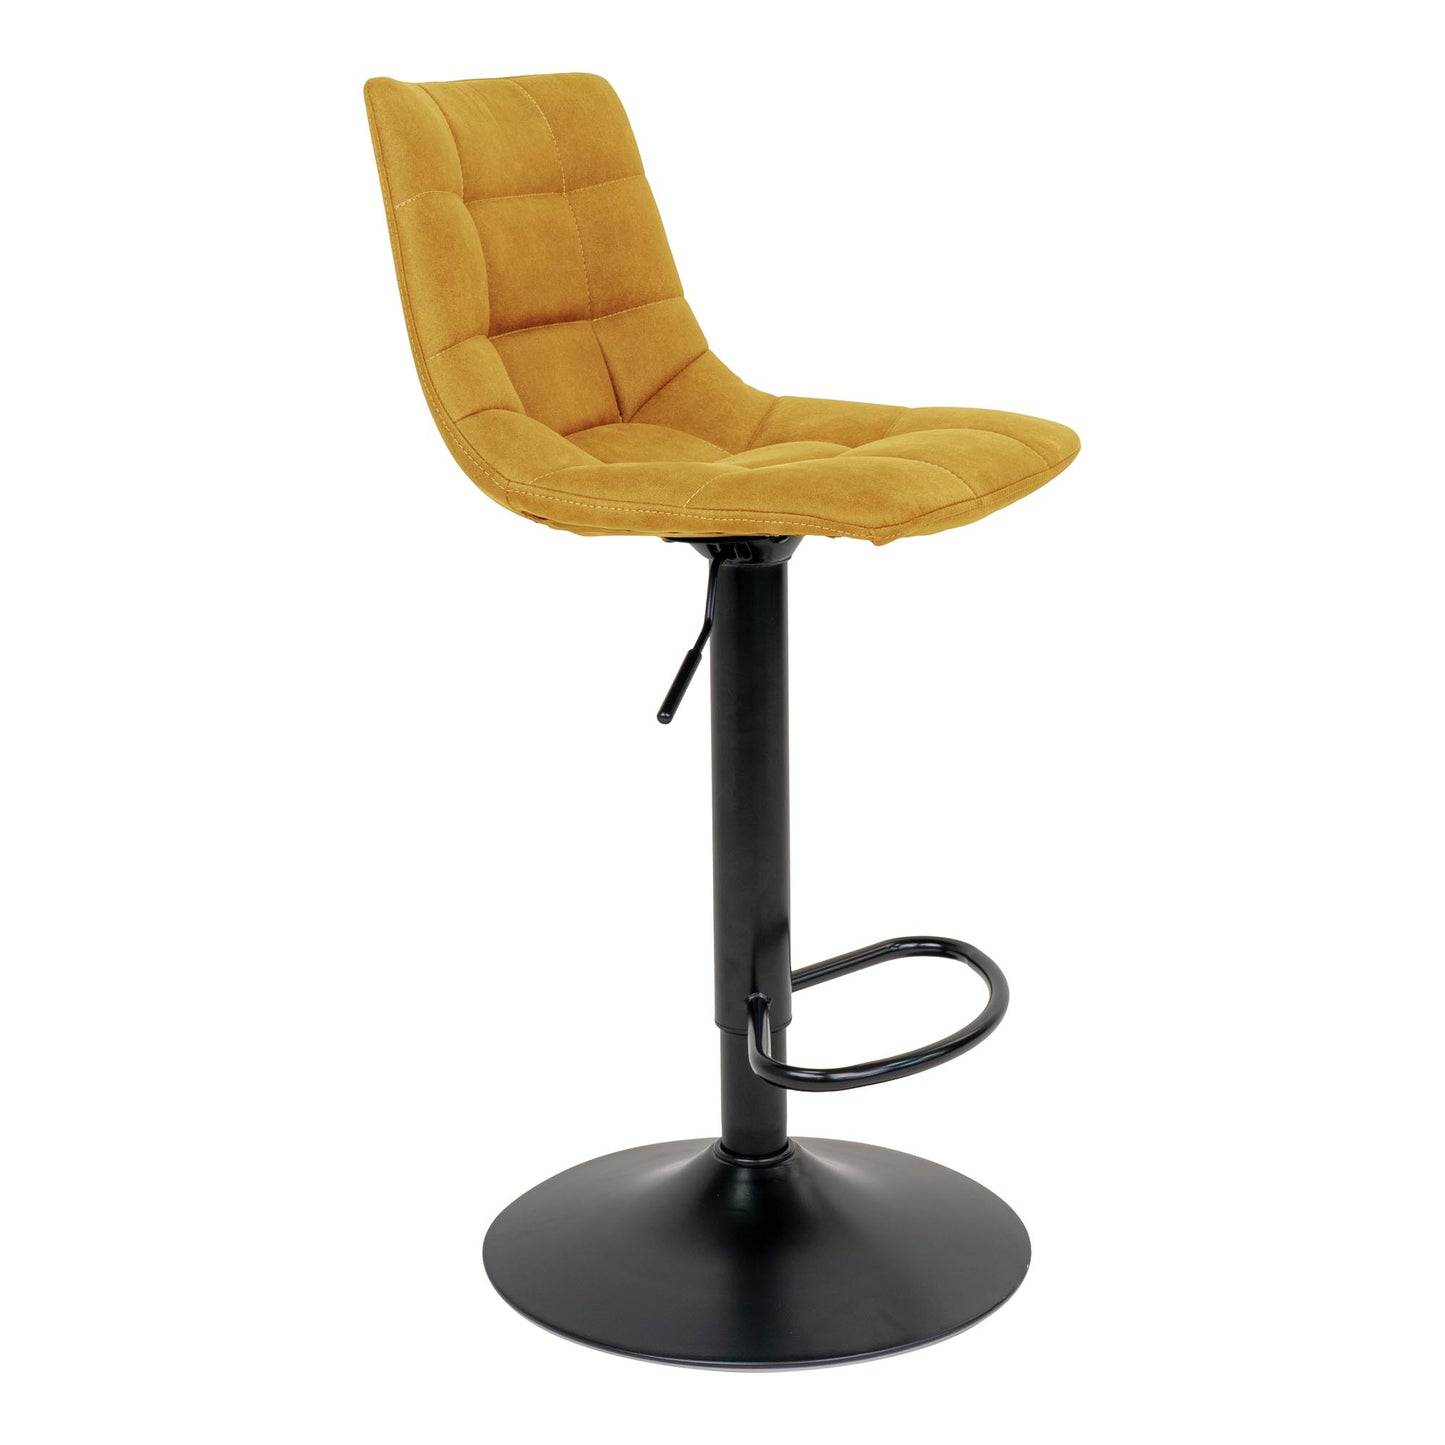 Middelfart Bar Chair - Barstoel in mosterdgeel met zwarte poten - set van 2-Stoel-House Nordic-middelfart-bar-chair-bar-chair-in-mustard-yellow-with-black-legs-4-barstoel, hoge stoel, MIN2, stoel-Barstoel in mosterdgeel met zwarte poten Materiaal Polyester fluweel, staal Kleur Mosterd Geel-5713917009404-1001303-Cerasus Homestyle